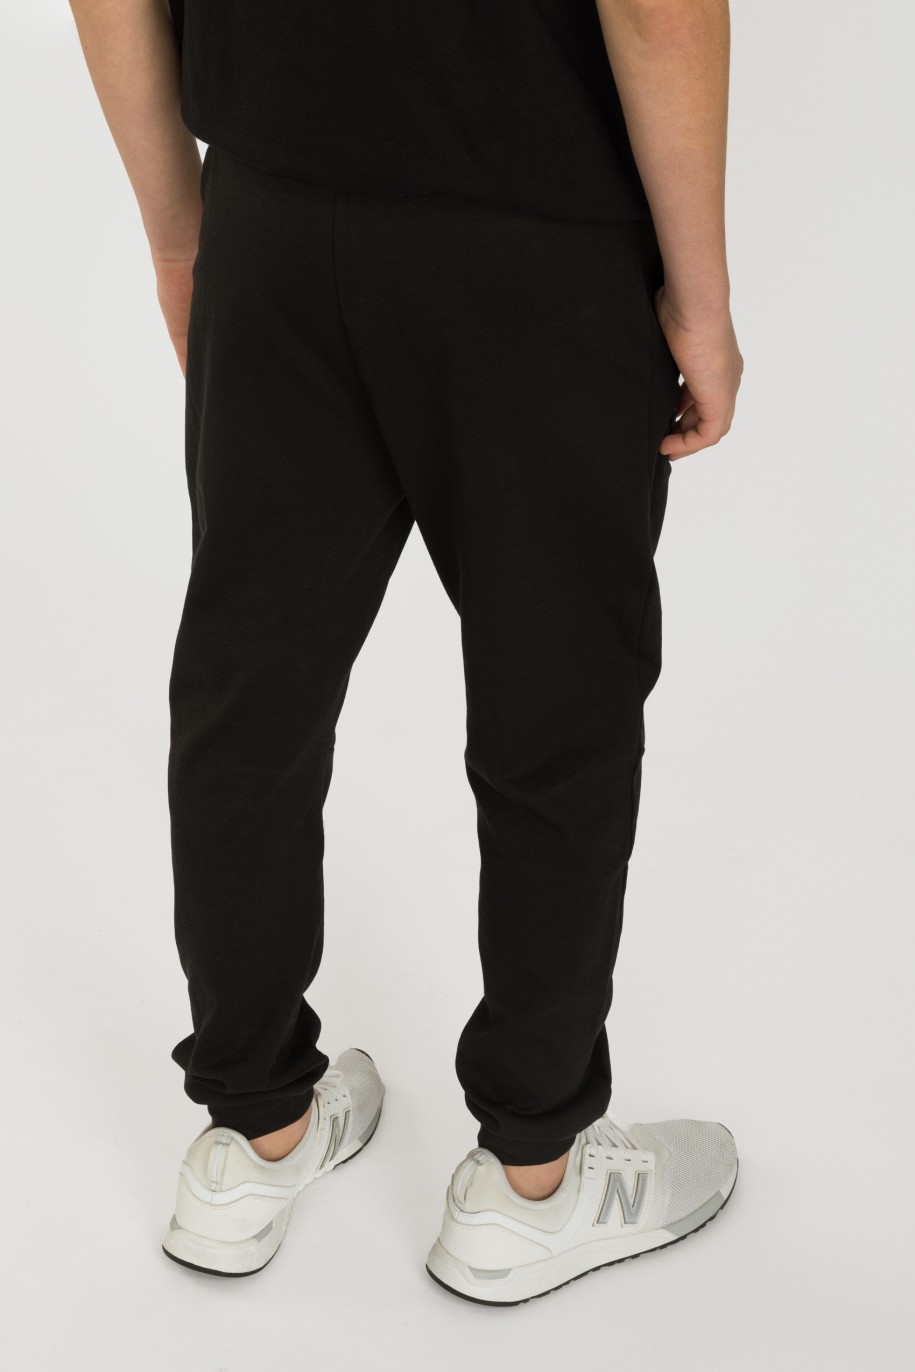 Czarne spodnie dresowe dla chłopaka TEENAGE REBELLION - 32669